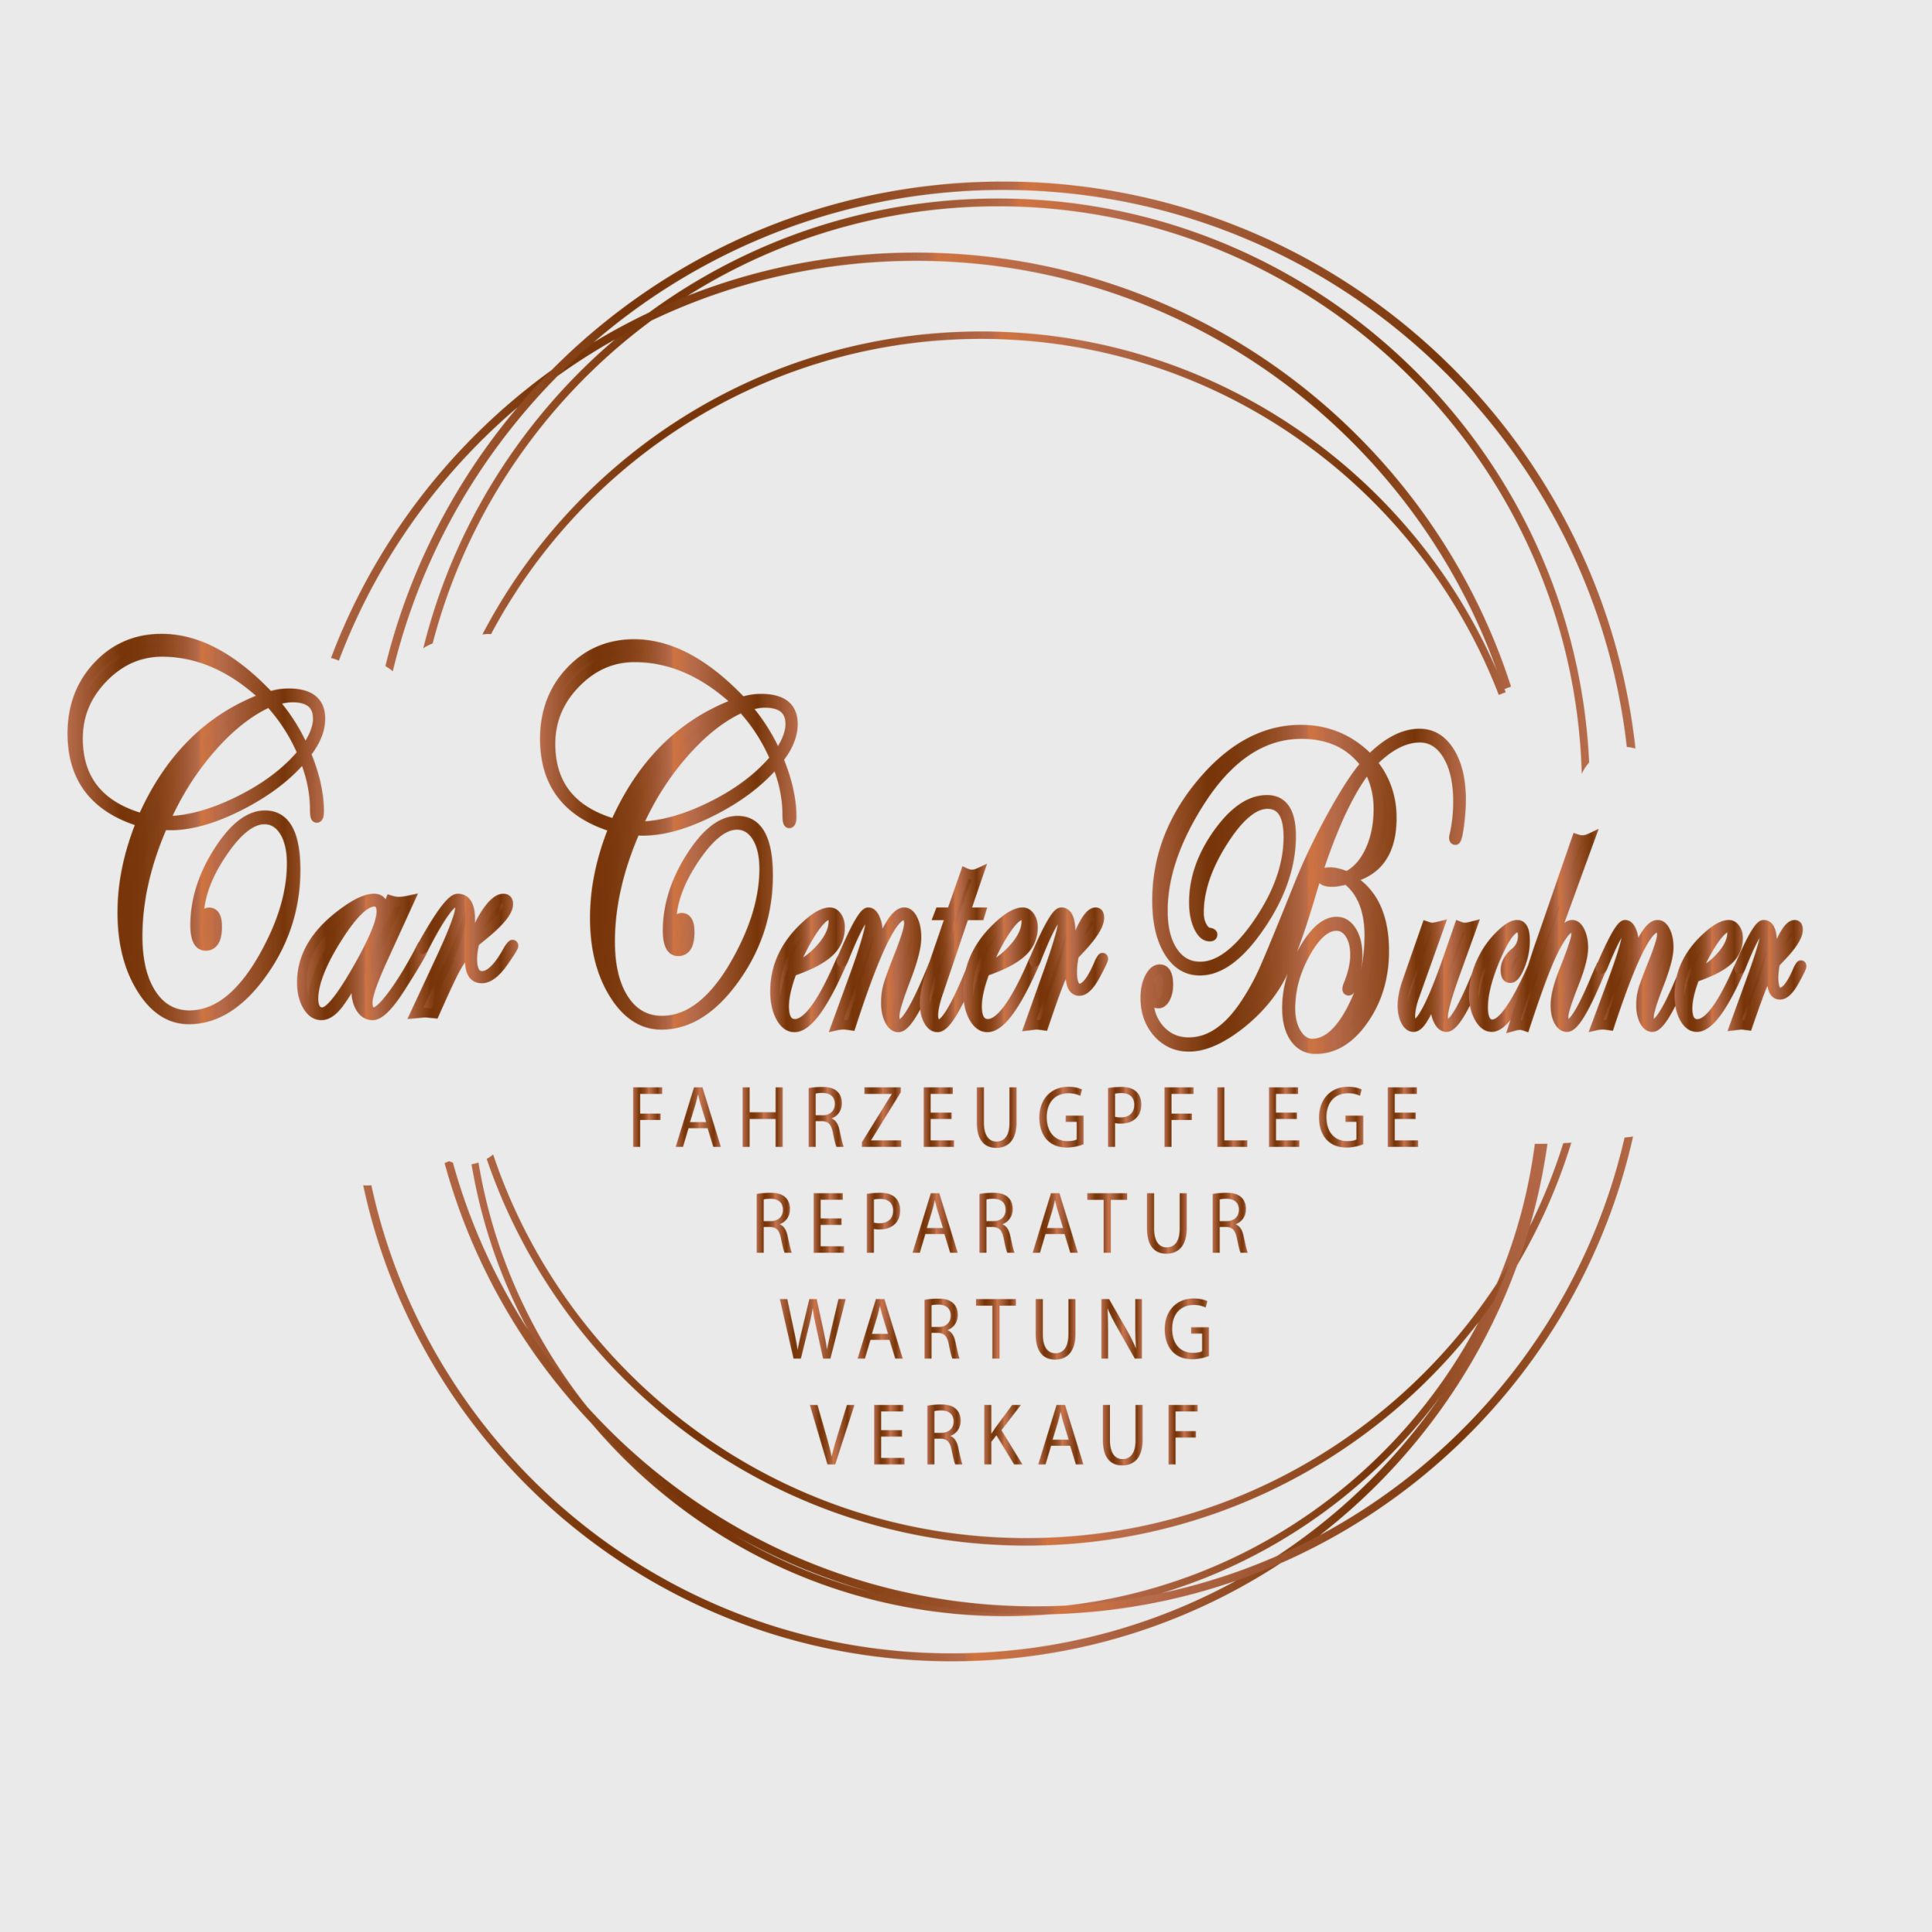 Car Center Buchner